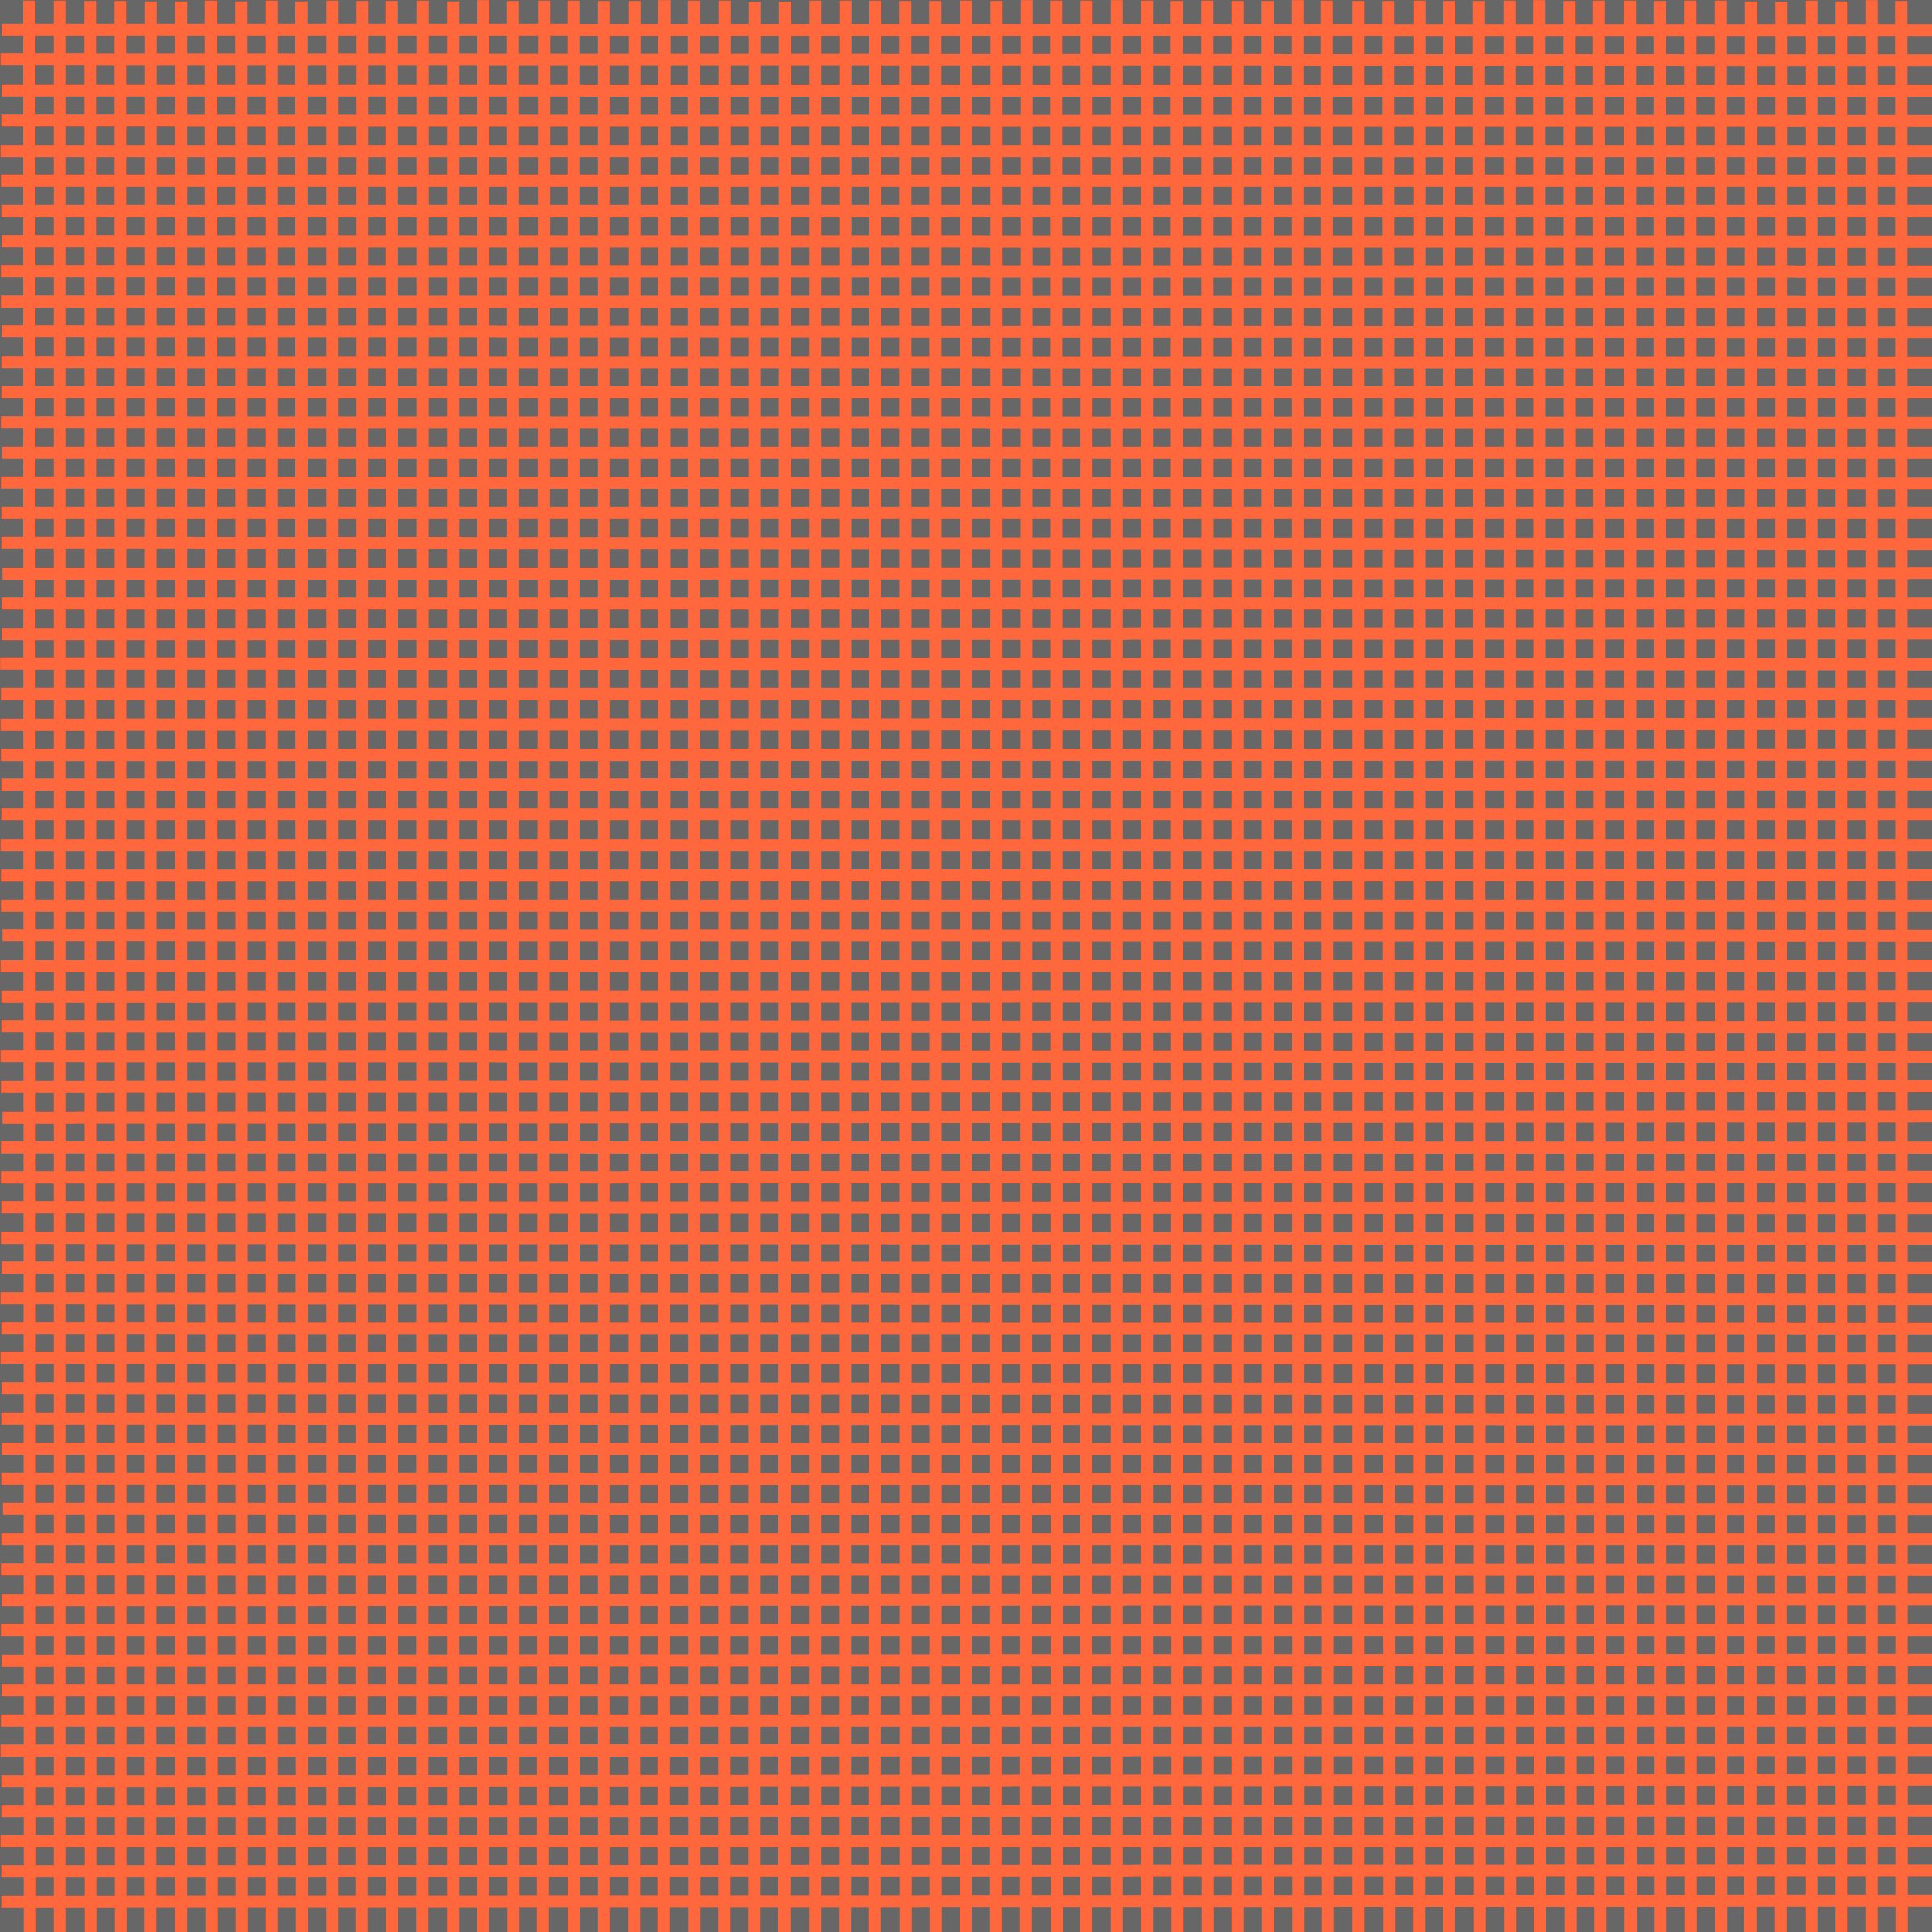 small grid 9 (cadmium orange).jpg